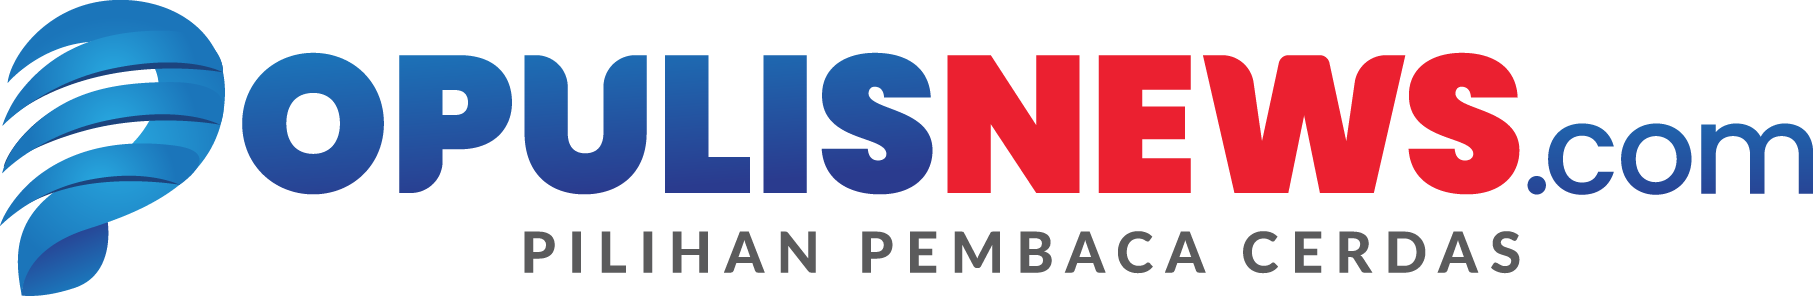 Logo populisnews.com